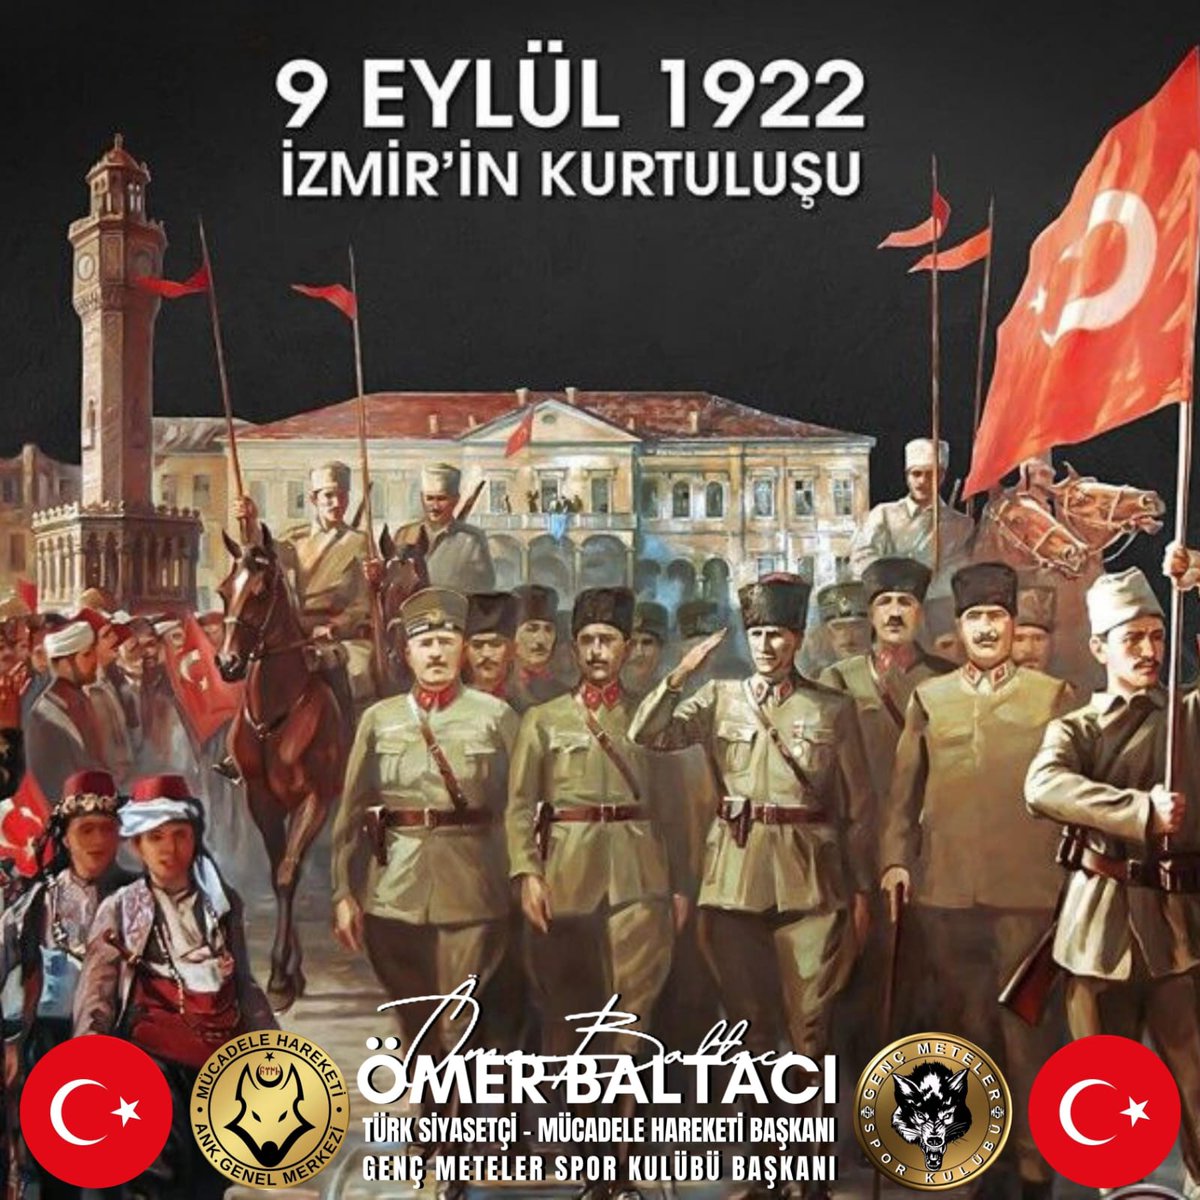 'Bütün dünya duysun ki, Efendiler; artık İzmir hiçbir kirli ayağın üzerine basamayacağı kutsal bir topraktır.' #9Eylül İzmir'in Kurtuluşu kutlu olsun. Başta Gazi Mustafa Kemal Atatürk ve silah arkadaşları olmak üzere tüm aziz Şehitlerimizi saygı, rahmet ve minnetle anıyorum. 🇹🇷